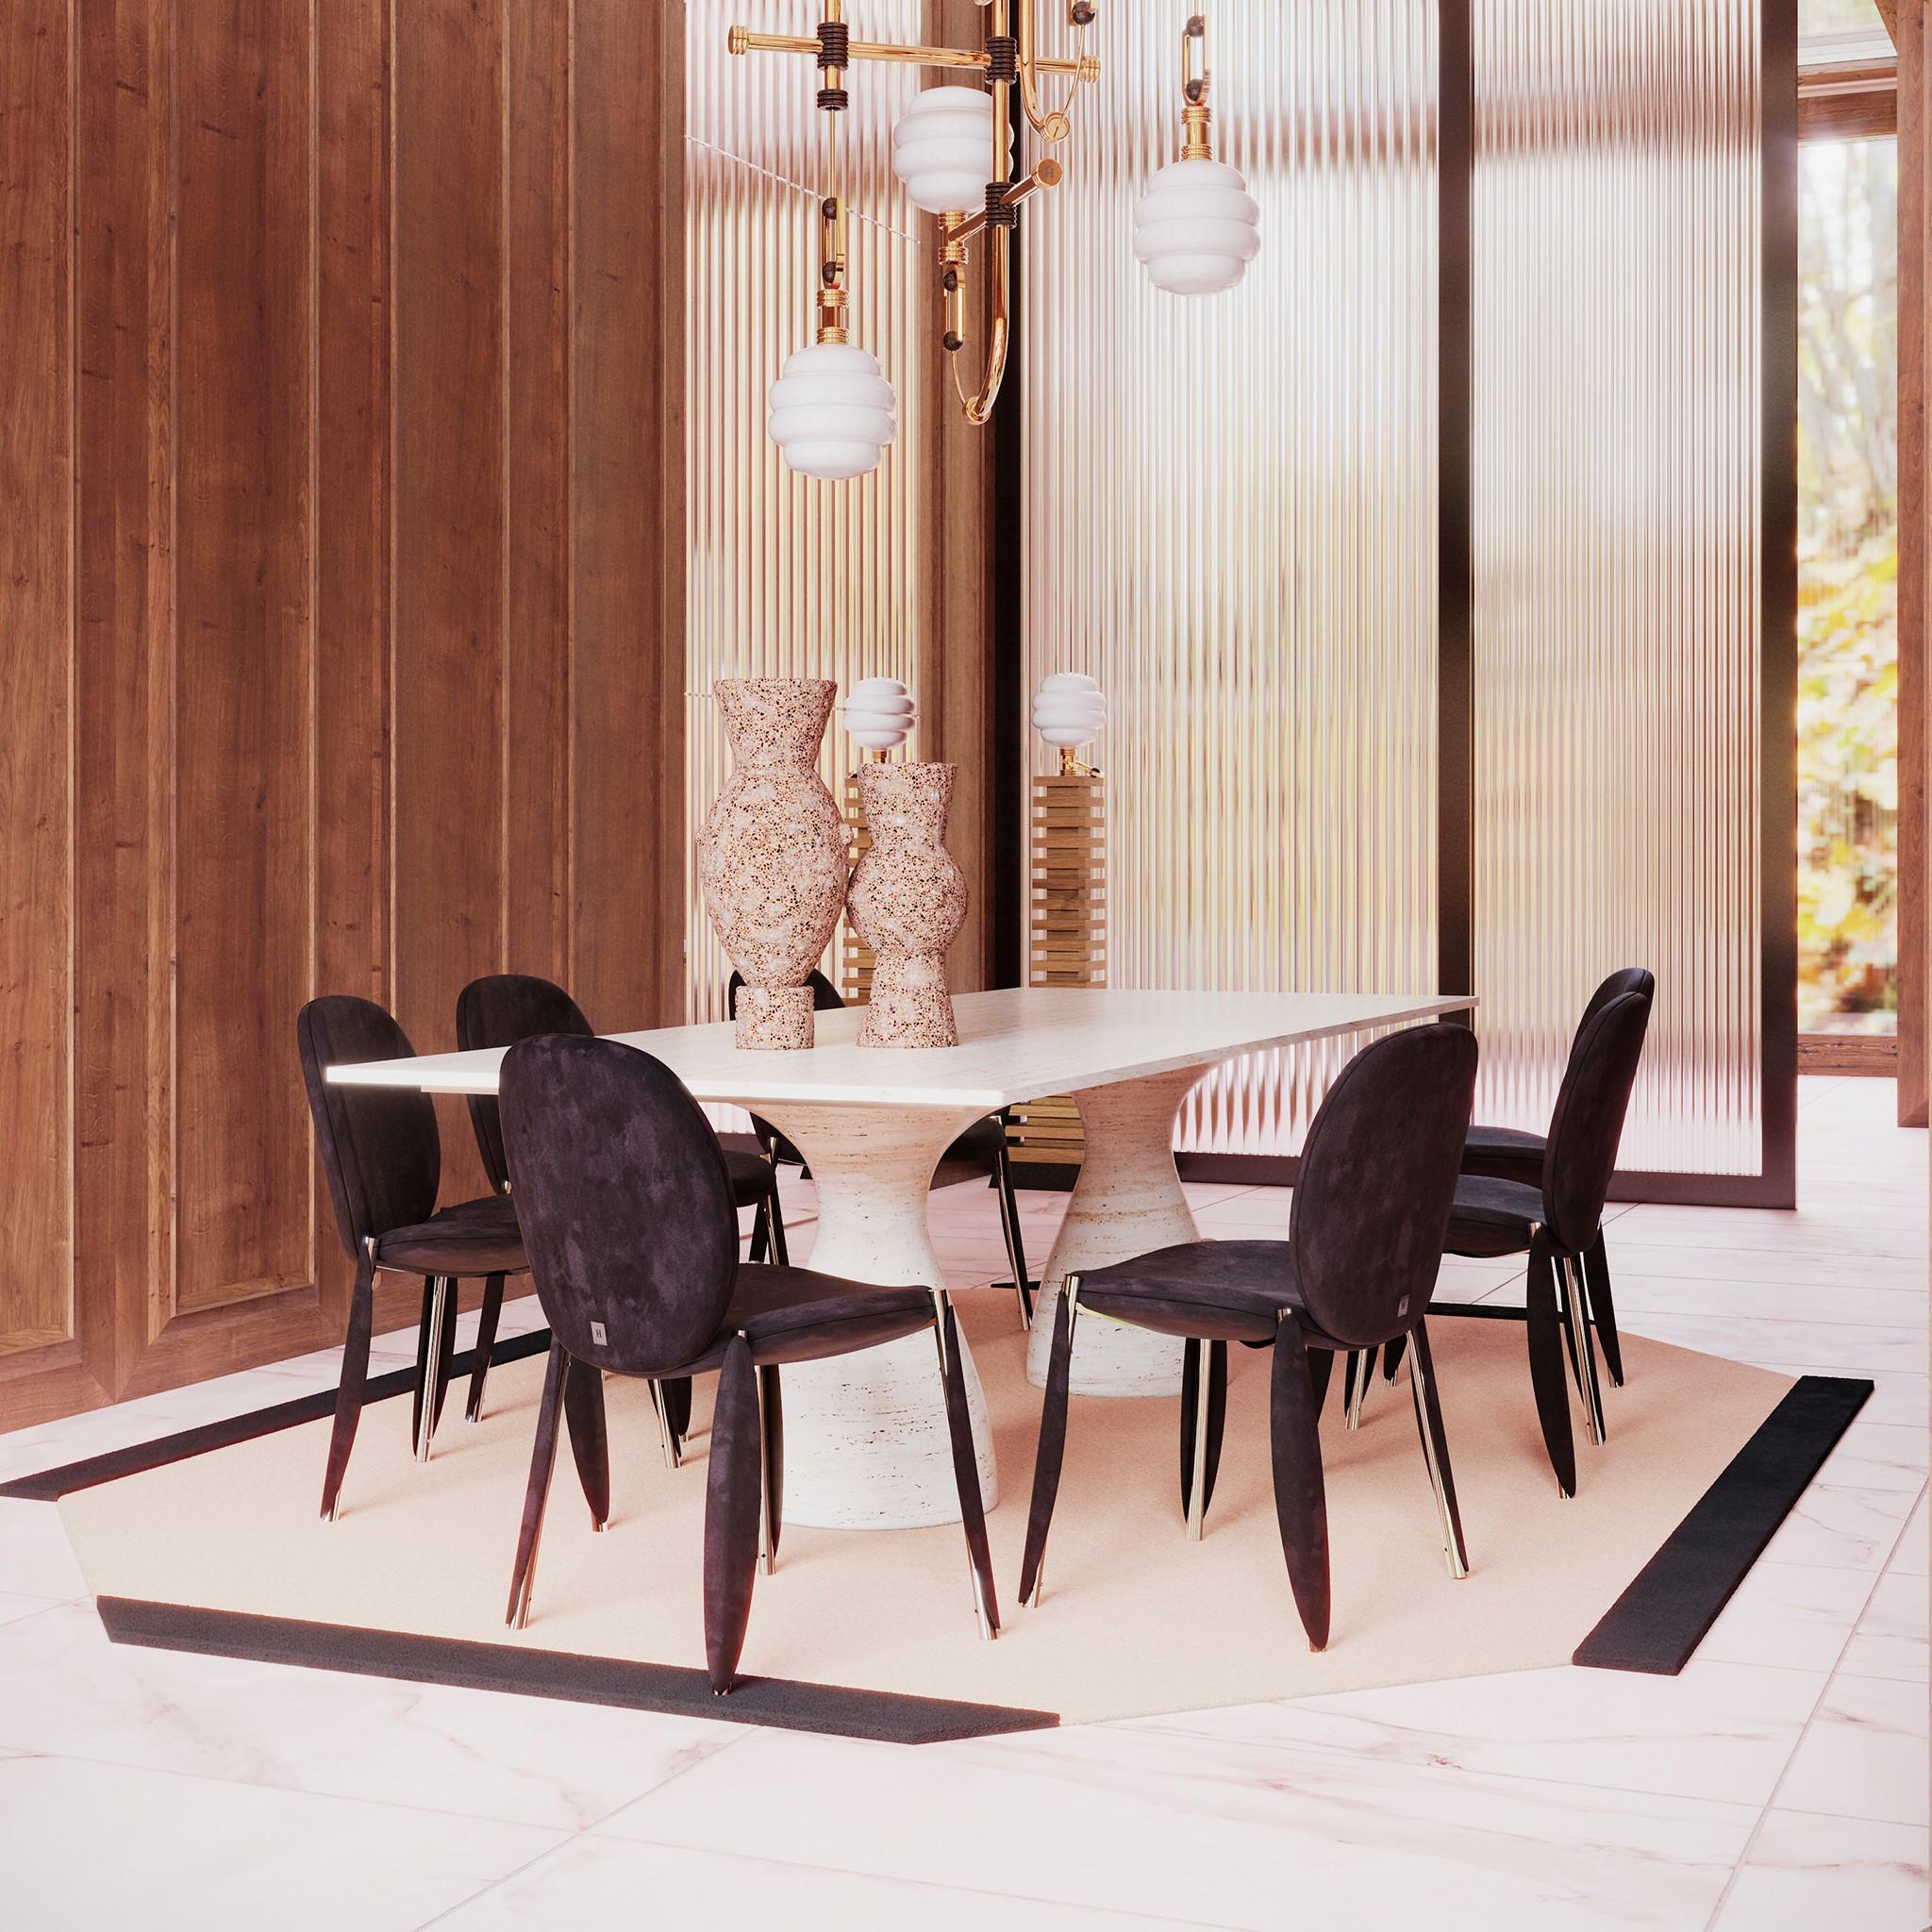 Table de salle à manger Zimmer Le travertin est une table de salle à manger moderne à la texture délicieuse et au riche tourbillon de couleurs naturelles. Avec sa modernité particulière, son plateau rectangulaire et ses pieds tournés massifs, la